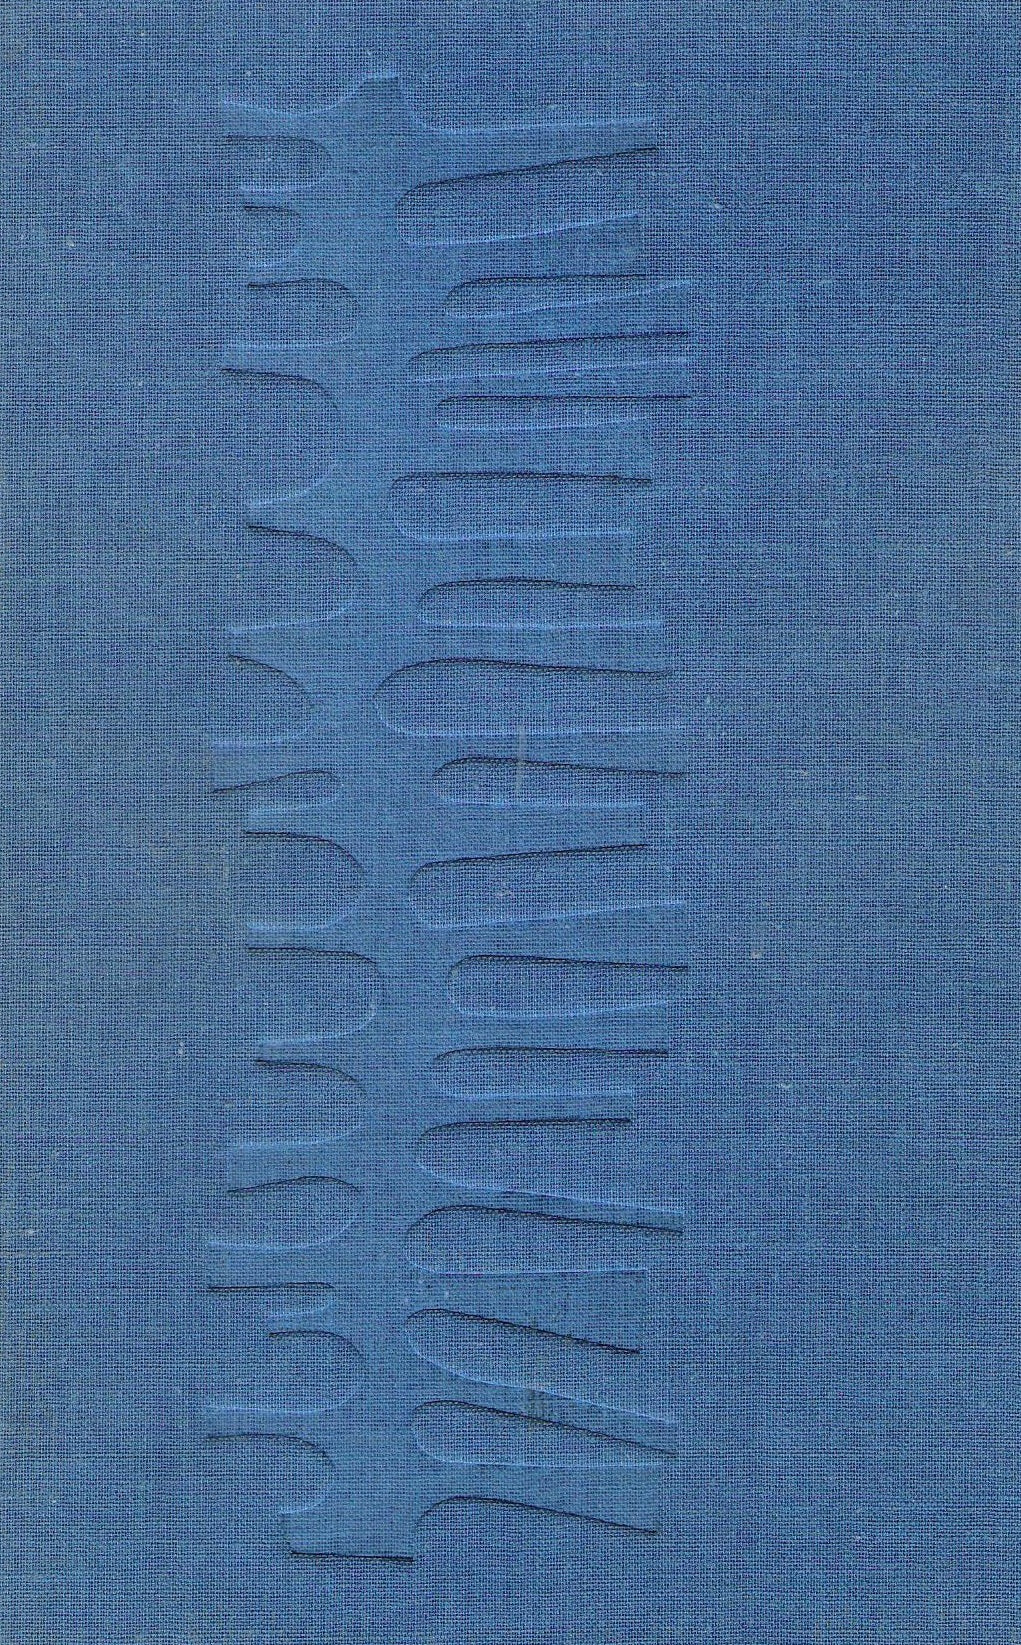 Antanas Škėma - Raštai (III tomai), 1967, Chicago (žr. būklę)